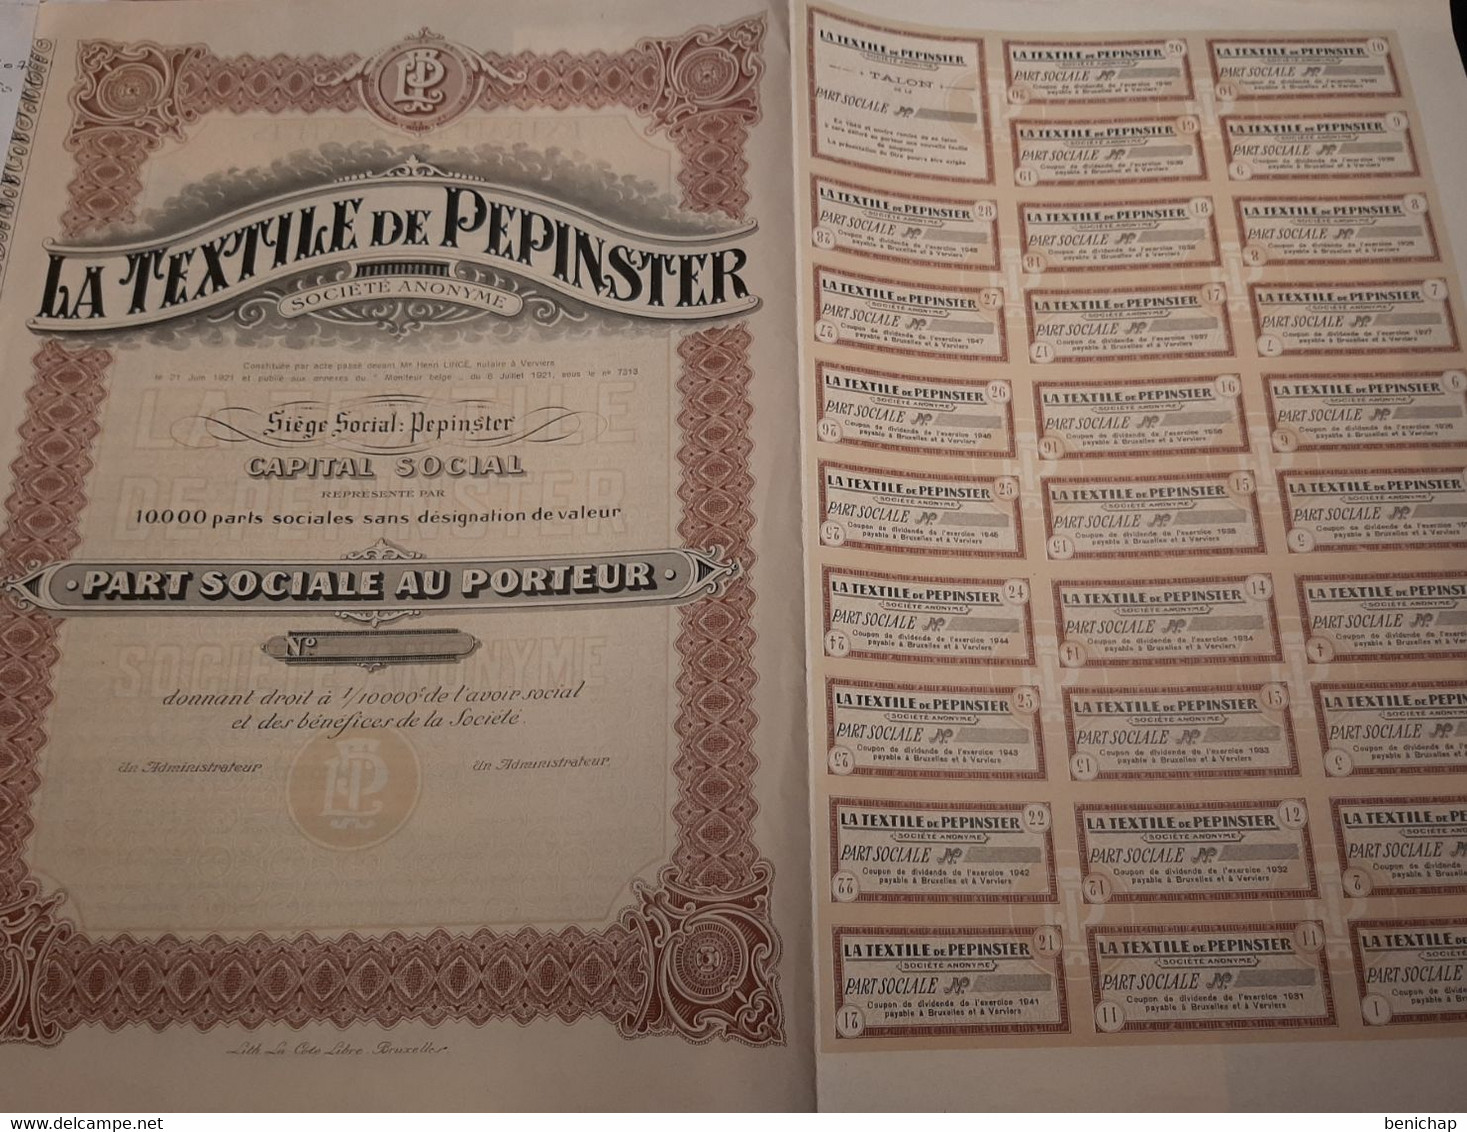 La Textile De Pepinster S.A. - Part Sociale Au Porteur - Pepinster 6 Juillet 1921. - Textiel